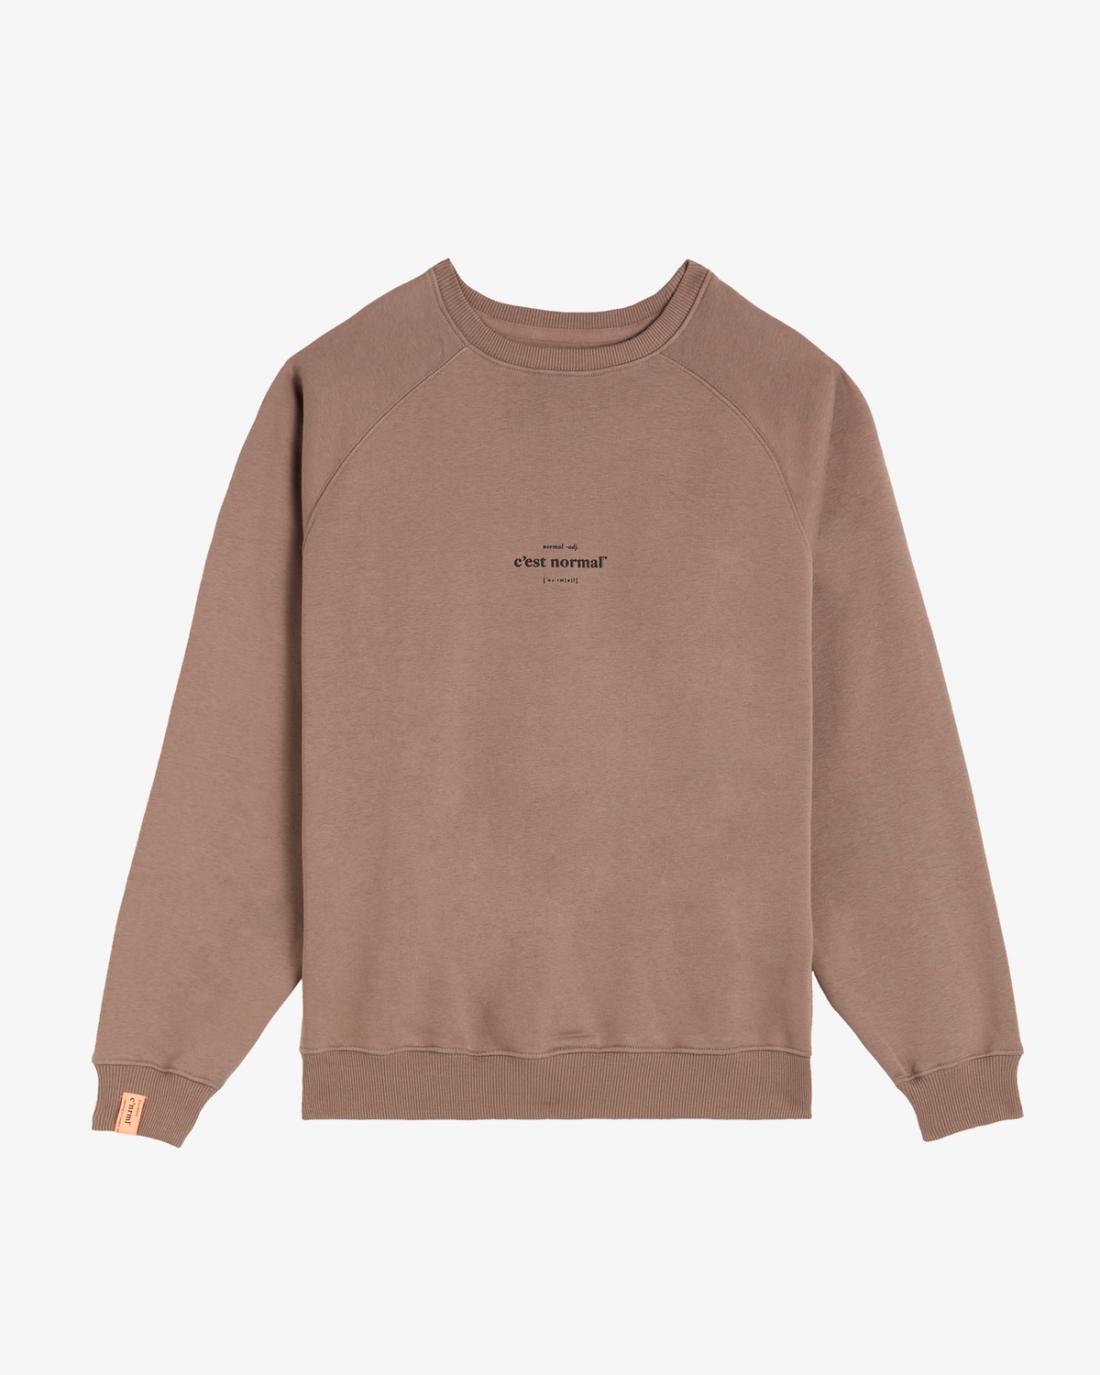 The Sweatshirt